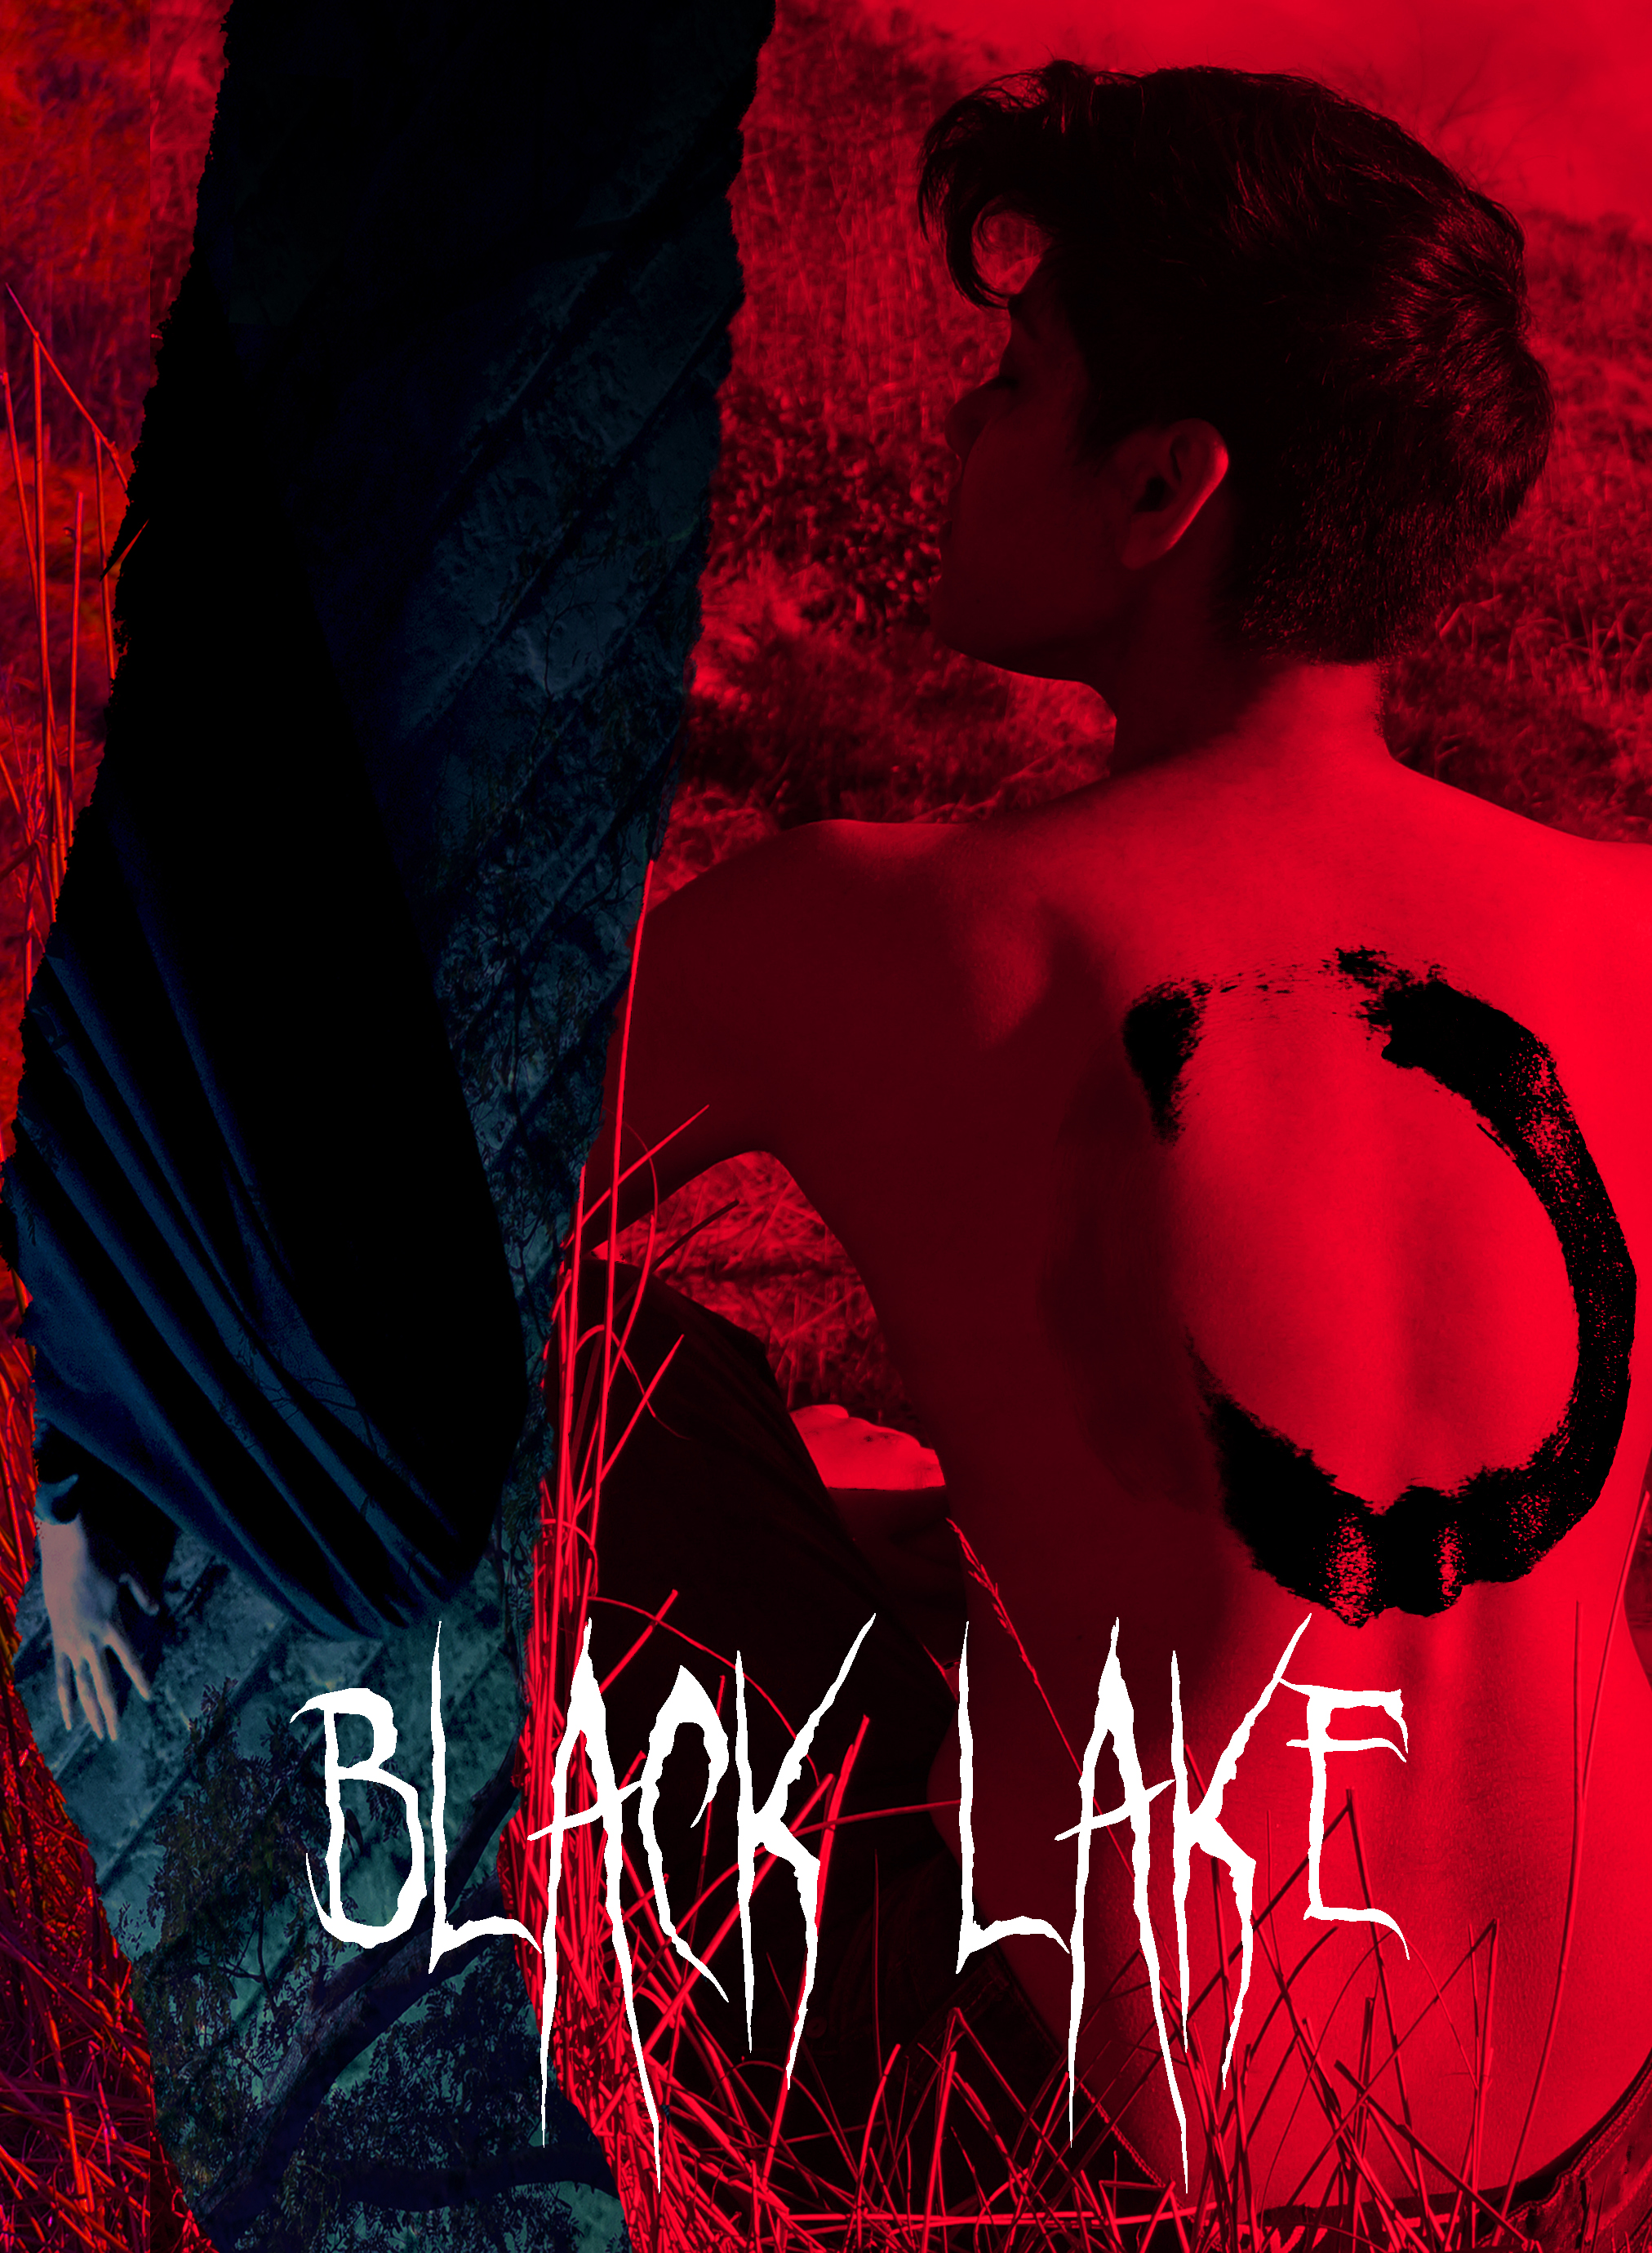 Black Lake постер